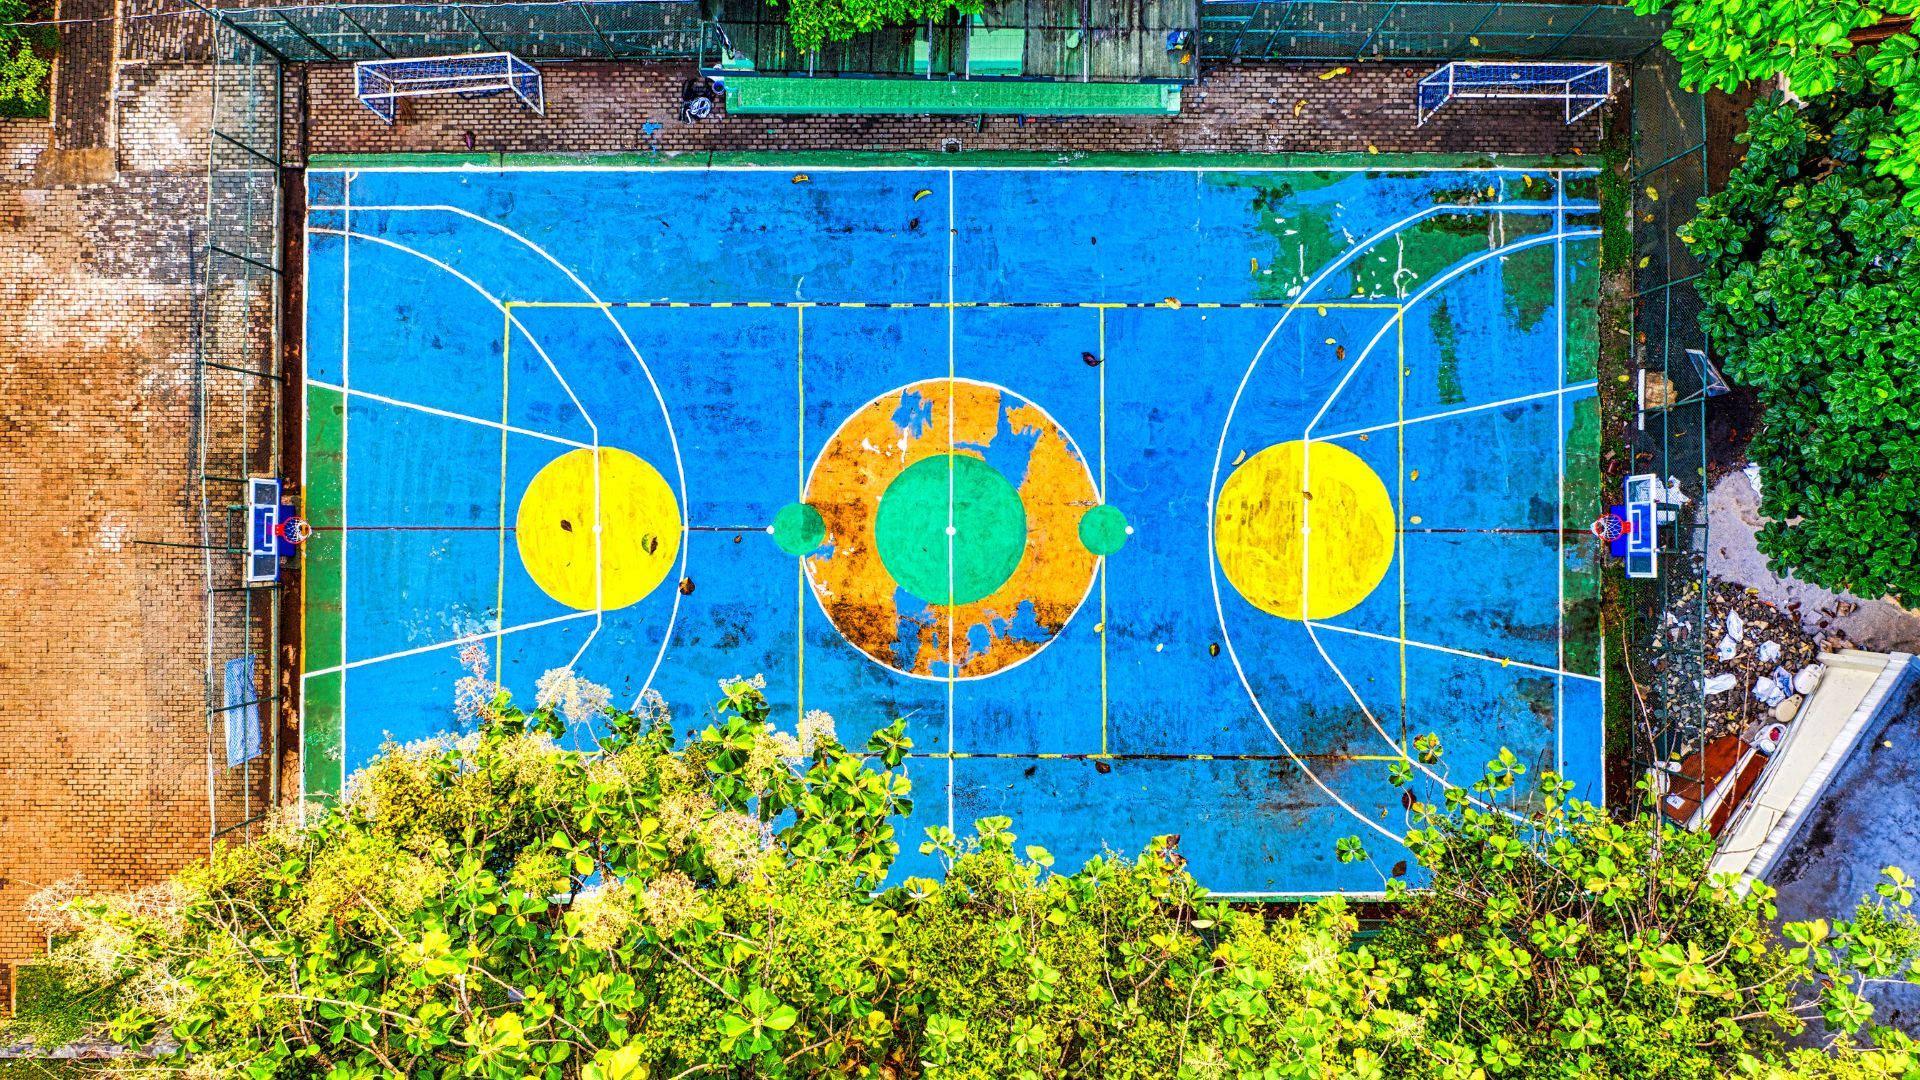 Bunteroutdoor-basketballplatz Wallpaper